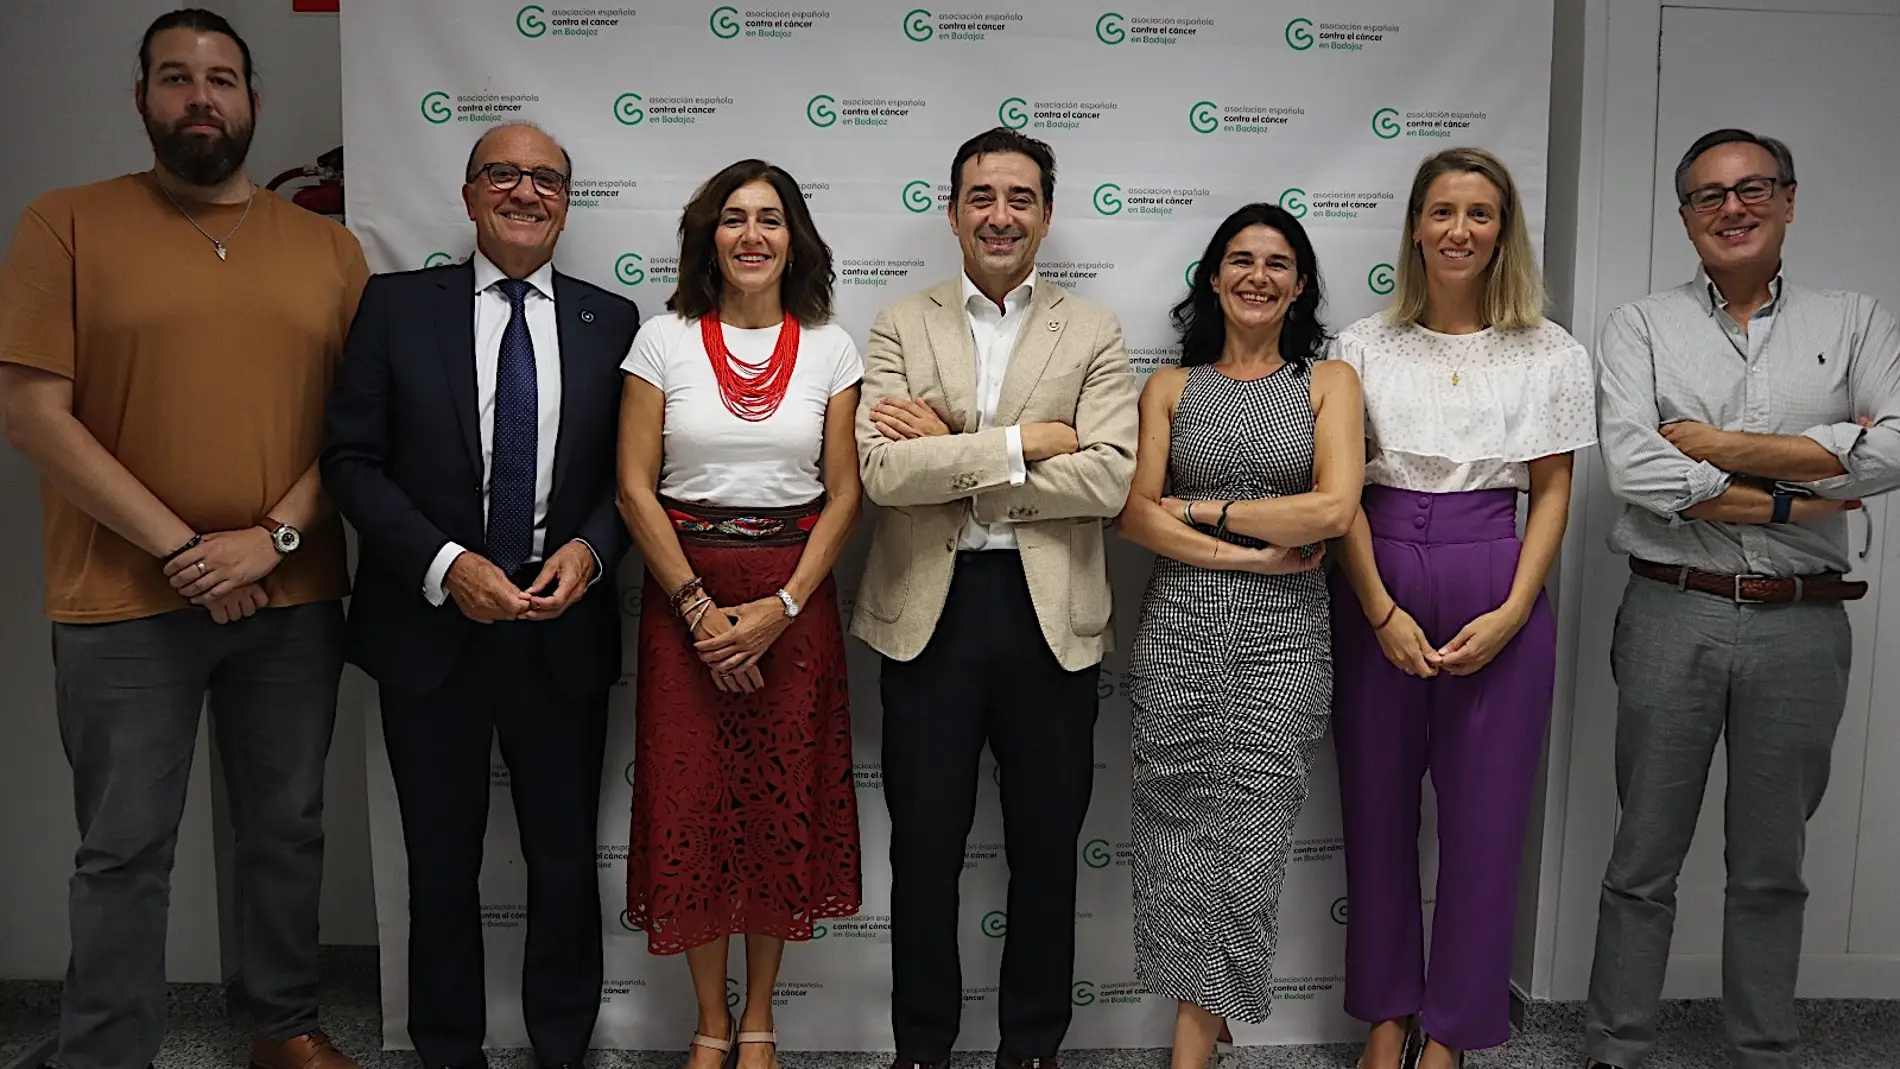 La Asociación Contra el Cáncer de la provincia de Badajoz renueva su Consejo Ejecutivo para “dar un nuevo impulso” a la organización